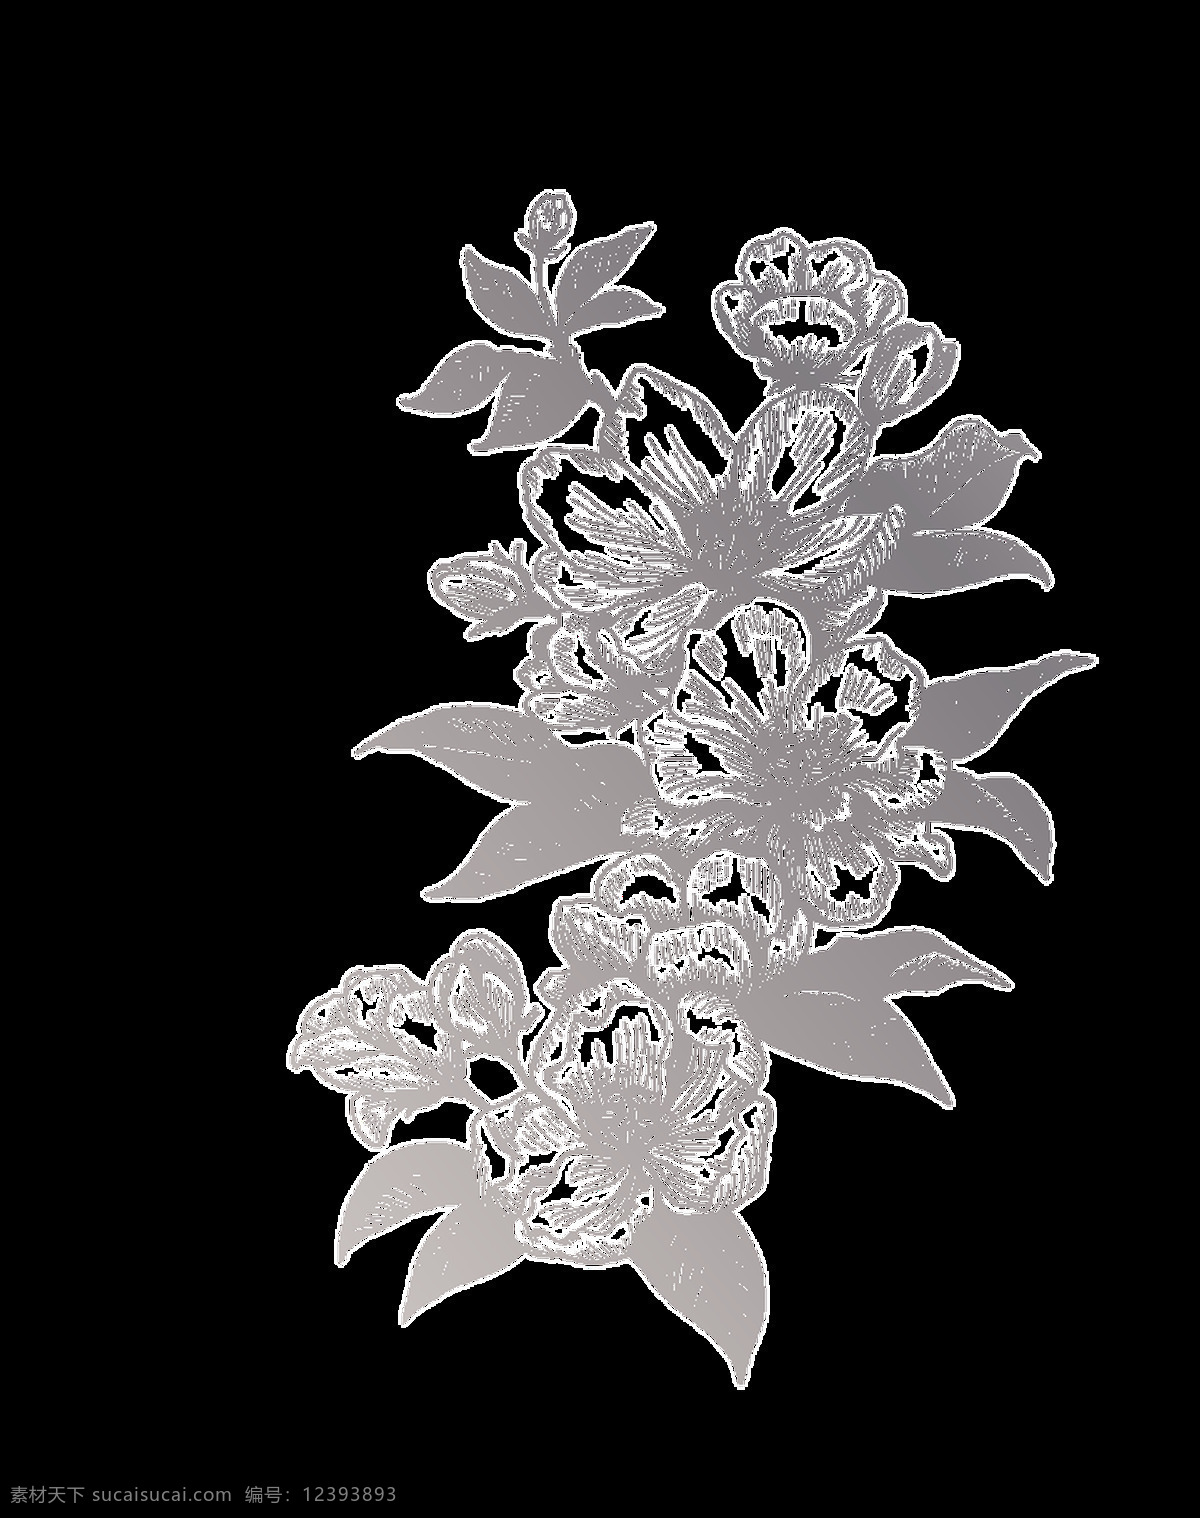 简 笔画 植物 卡通 透明 手绘 素描 黑白 花朵 透明素材 装饰 设计素材 淘宝素材 海报设计装饰 装饰图案